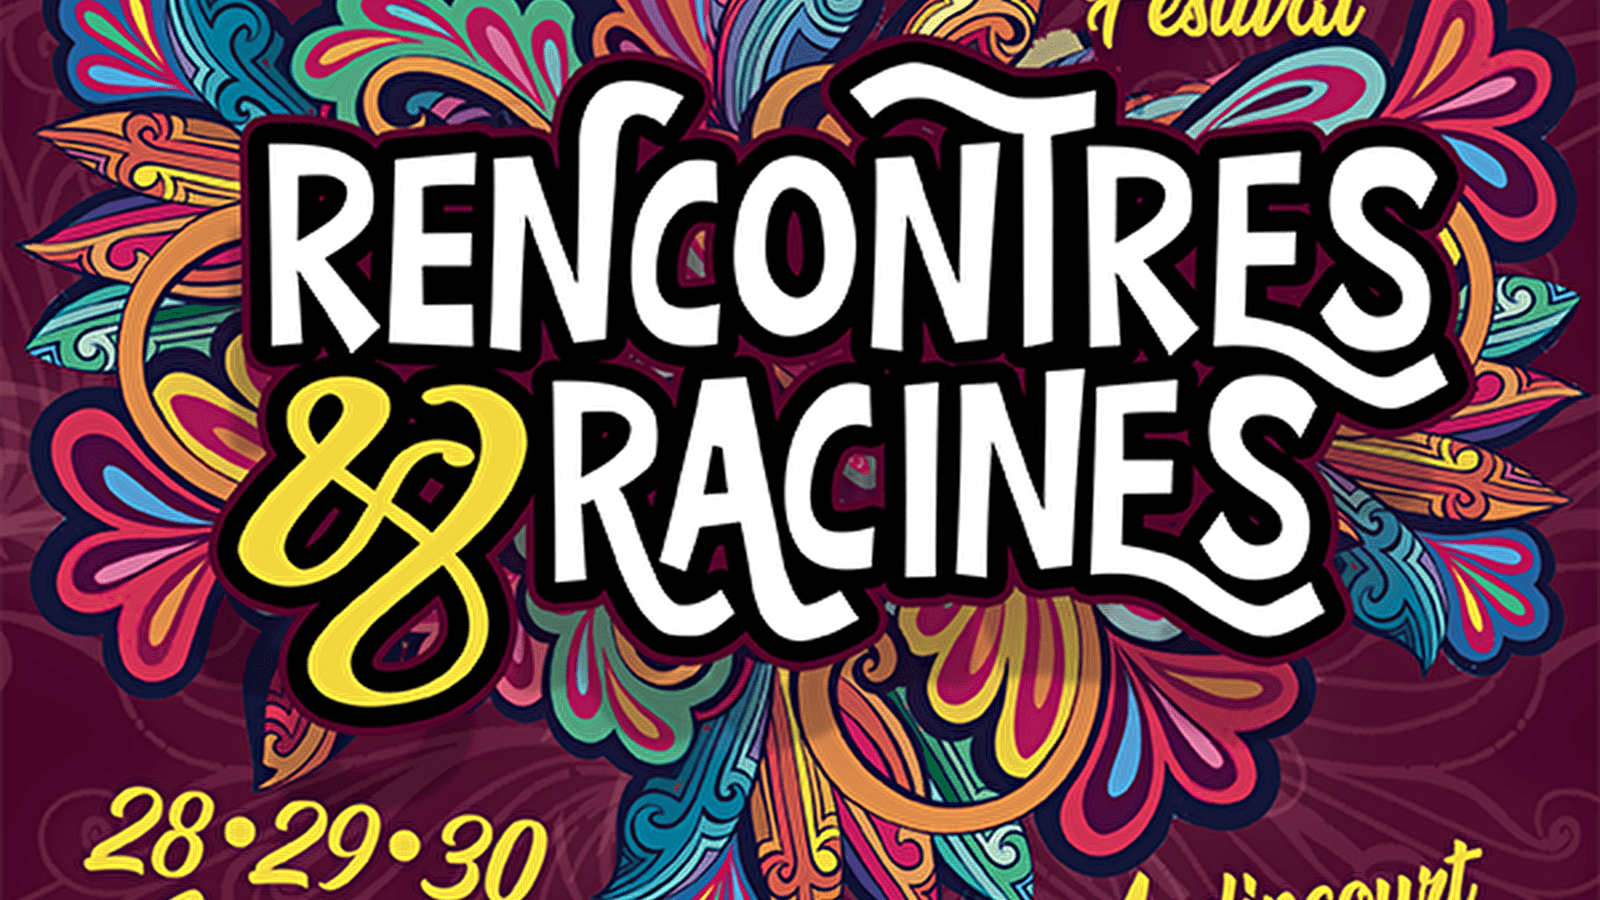 Festival Rencontres & Racines